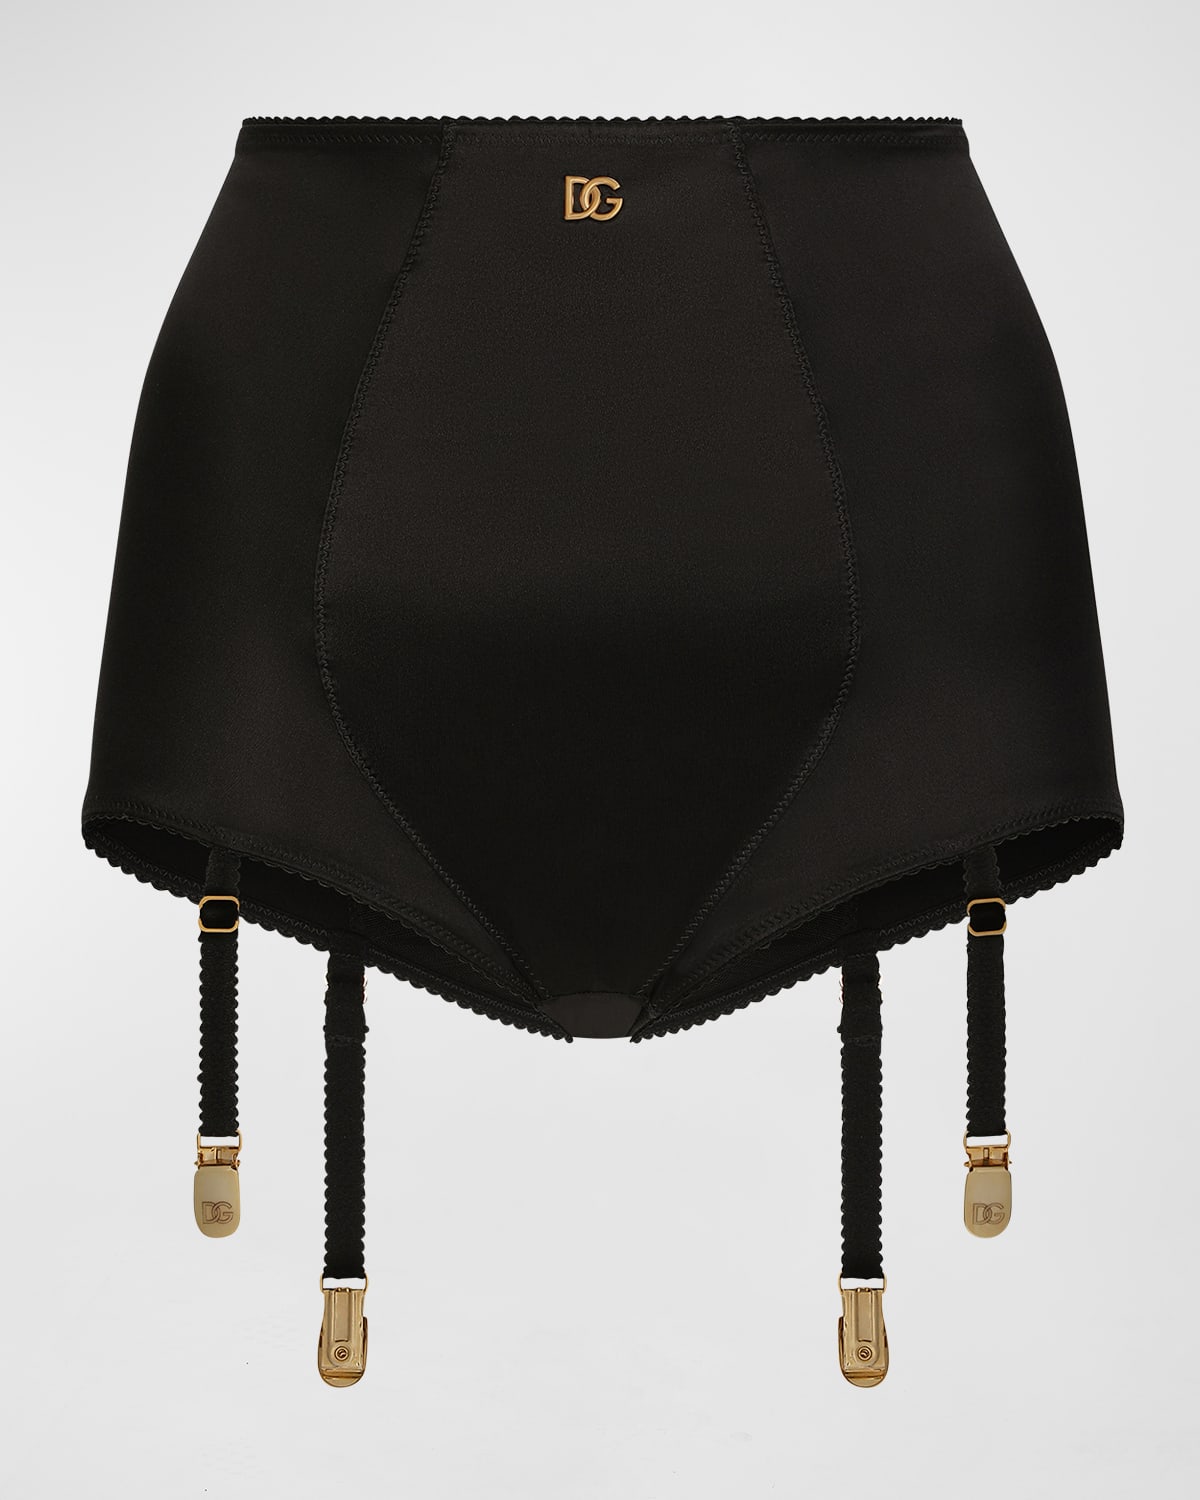 Dolce & Gabbana High-rise Logo Briefs W/ Garter Straps In Black